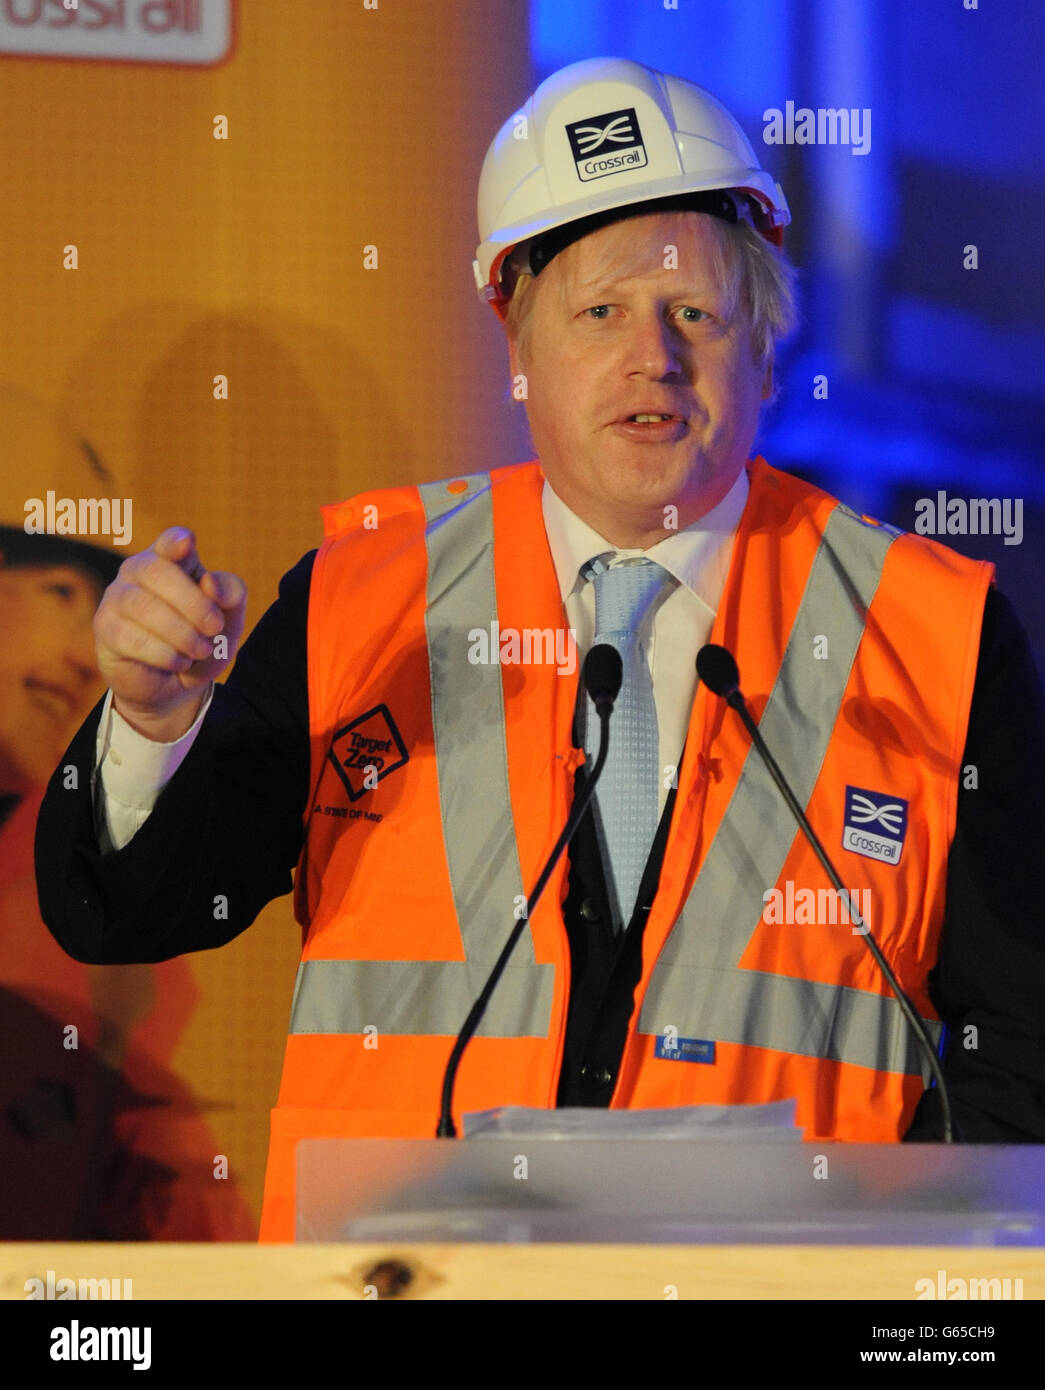 Il sindaco di Londra Boris Johnson segna la rottura della macchina di tunneling orientale da 1000 tonnellate, chiamata Elizabeth, nella stazione di Canary Wharf mentre il lavoro continua sul progetto Crossrail a Londra. Foto Stock